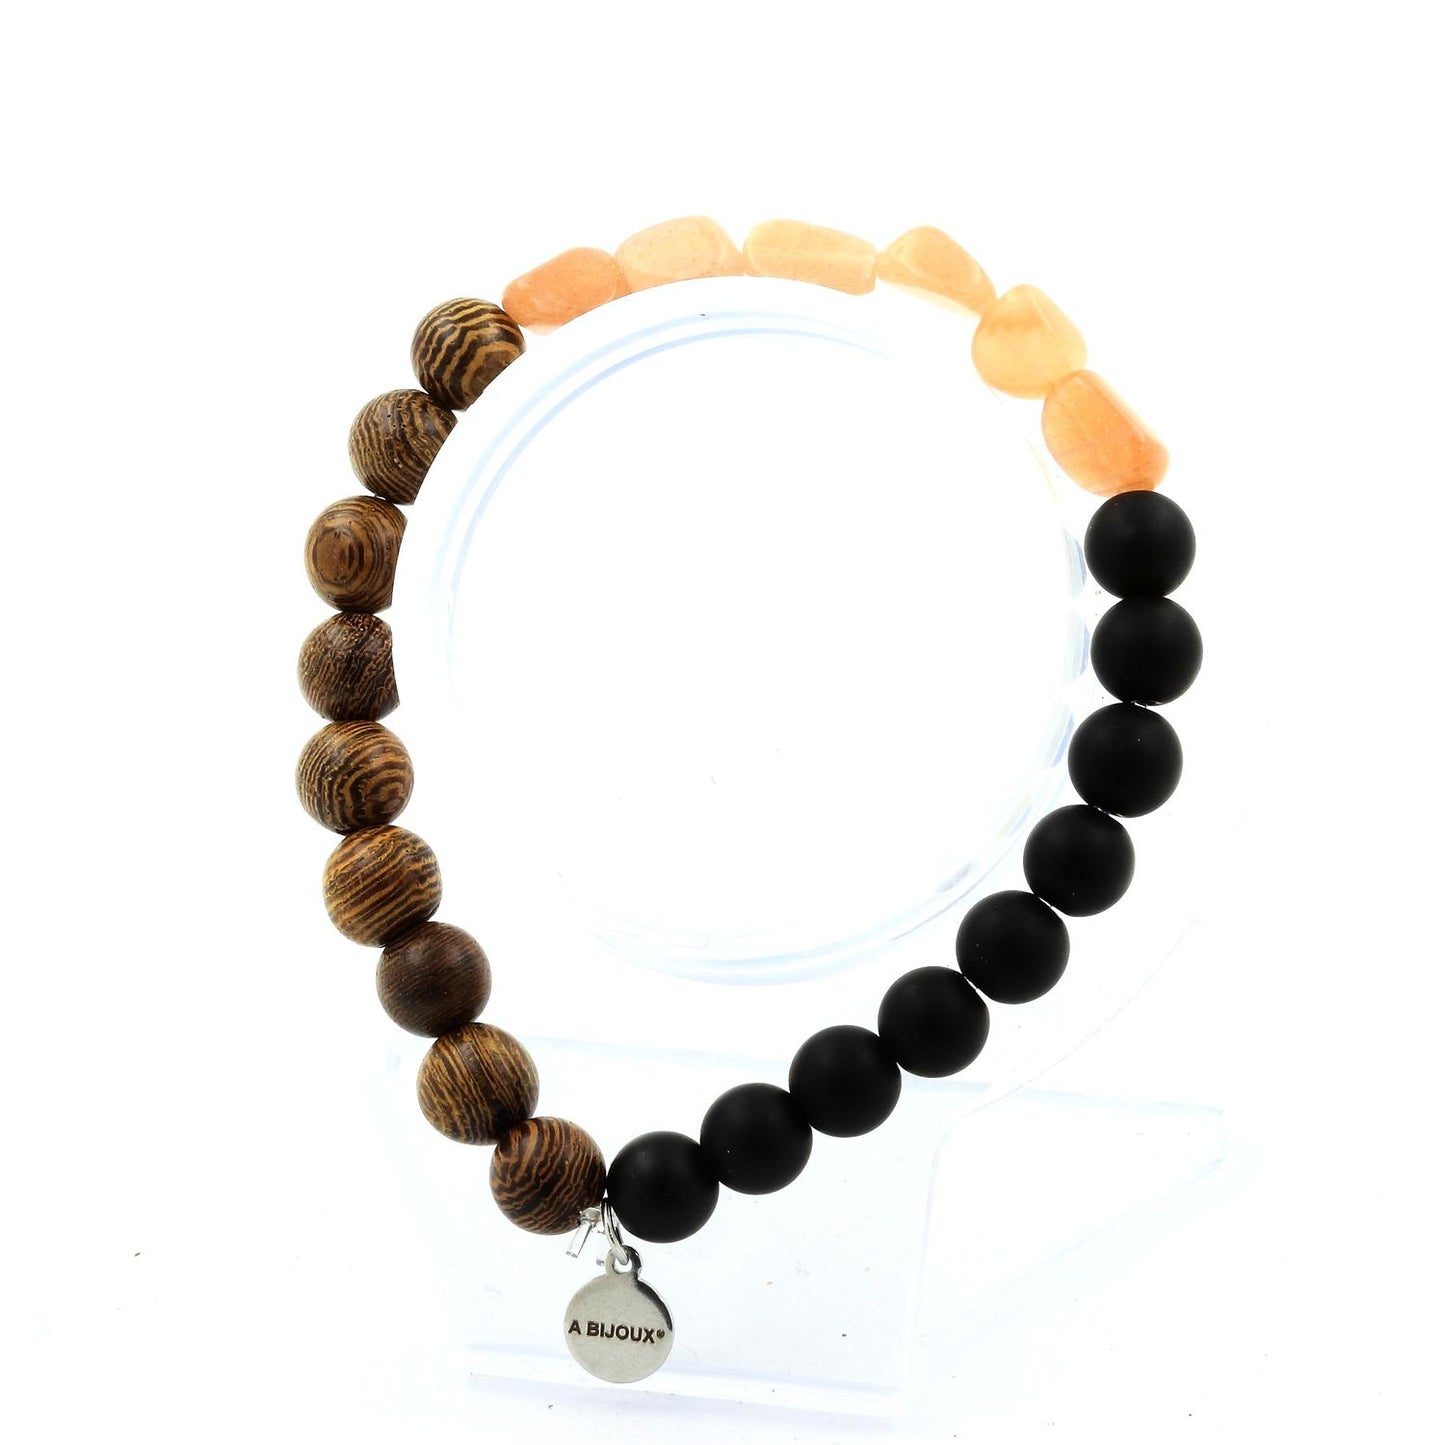 Pierre de soleil de Tanzanie + Perles Onyx noir mat + bois. Bracelet en Perles naturelles